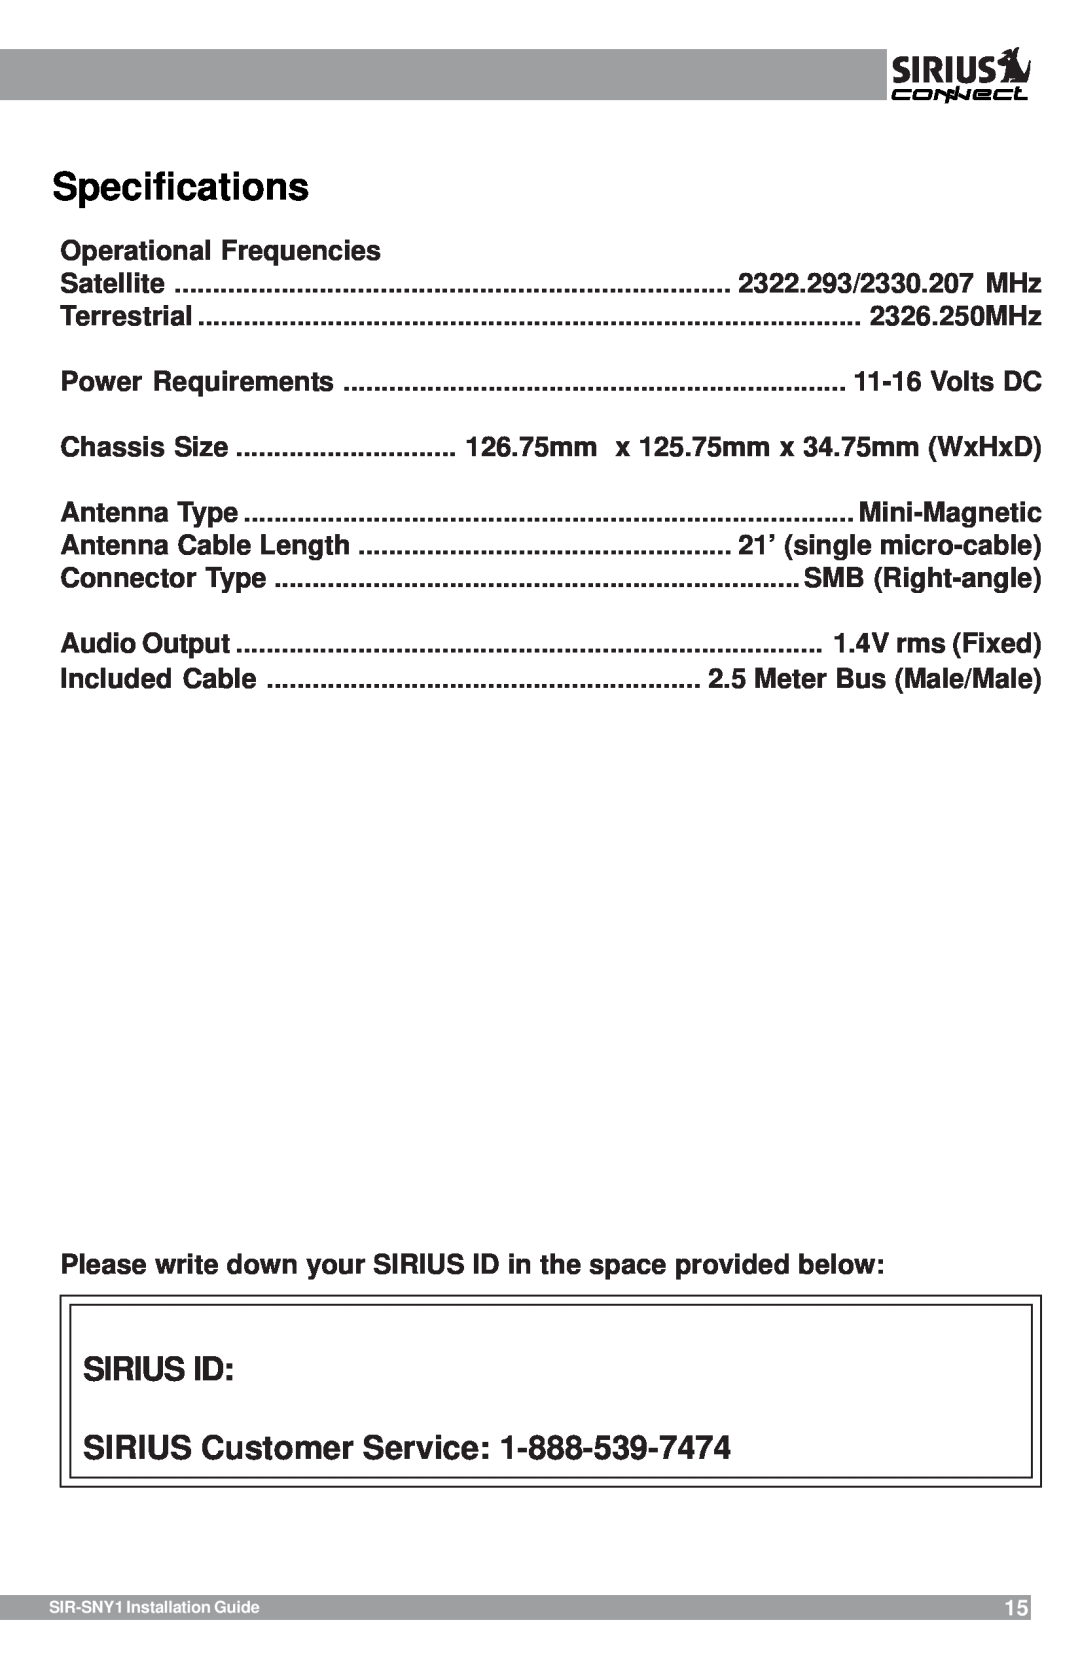 Sirius Satellite Radio SIR-SNY1 manual Specifications, SIRIUS ID SIRIUS Customer Service 